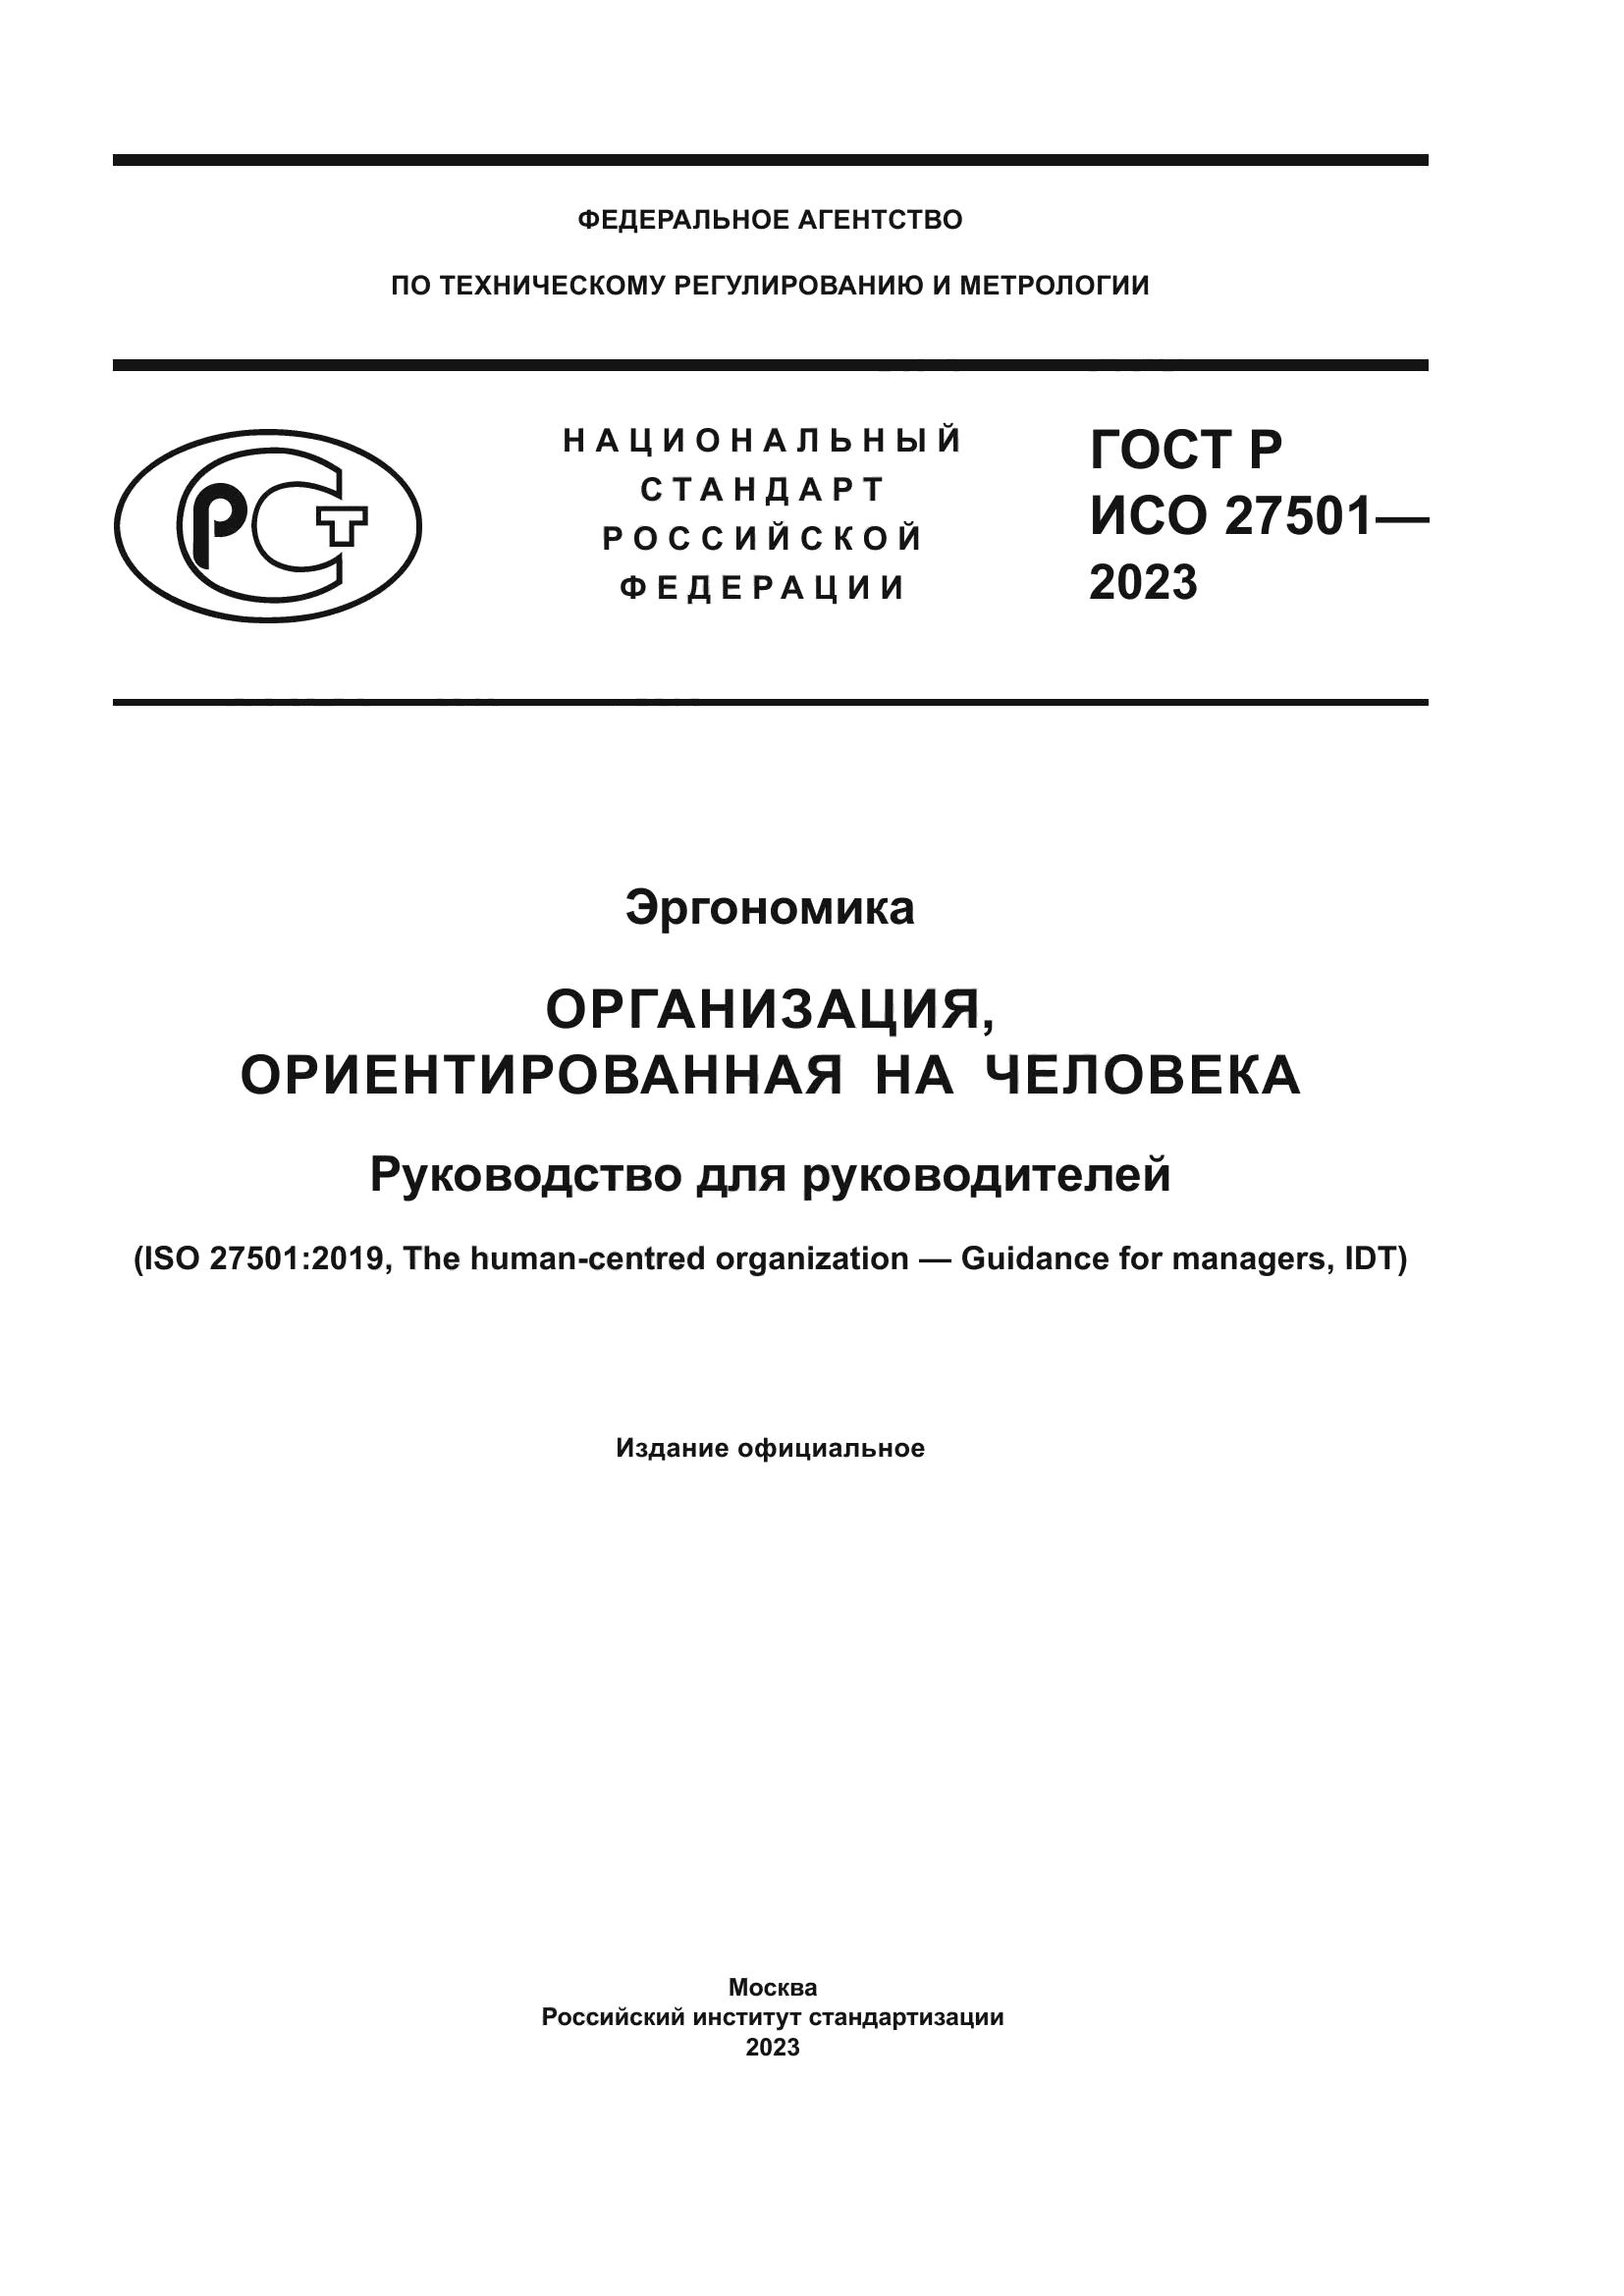 ГОСТ Р ИСО 27501-2023